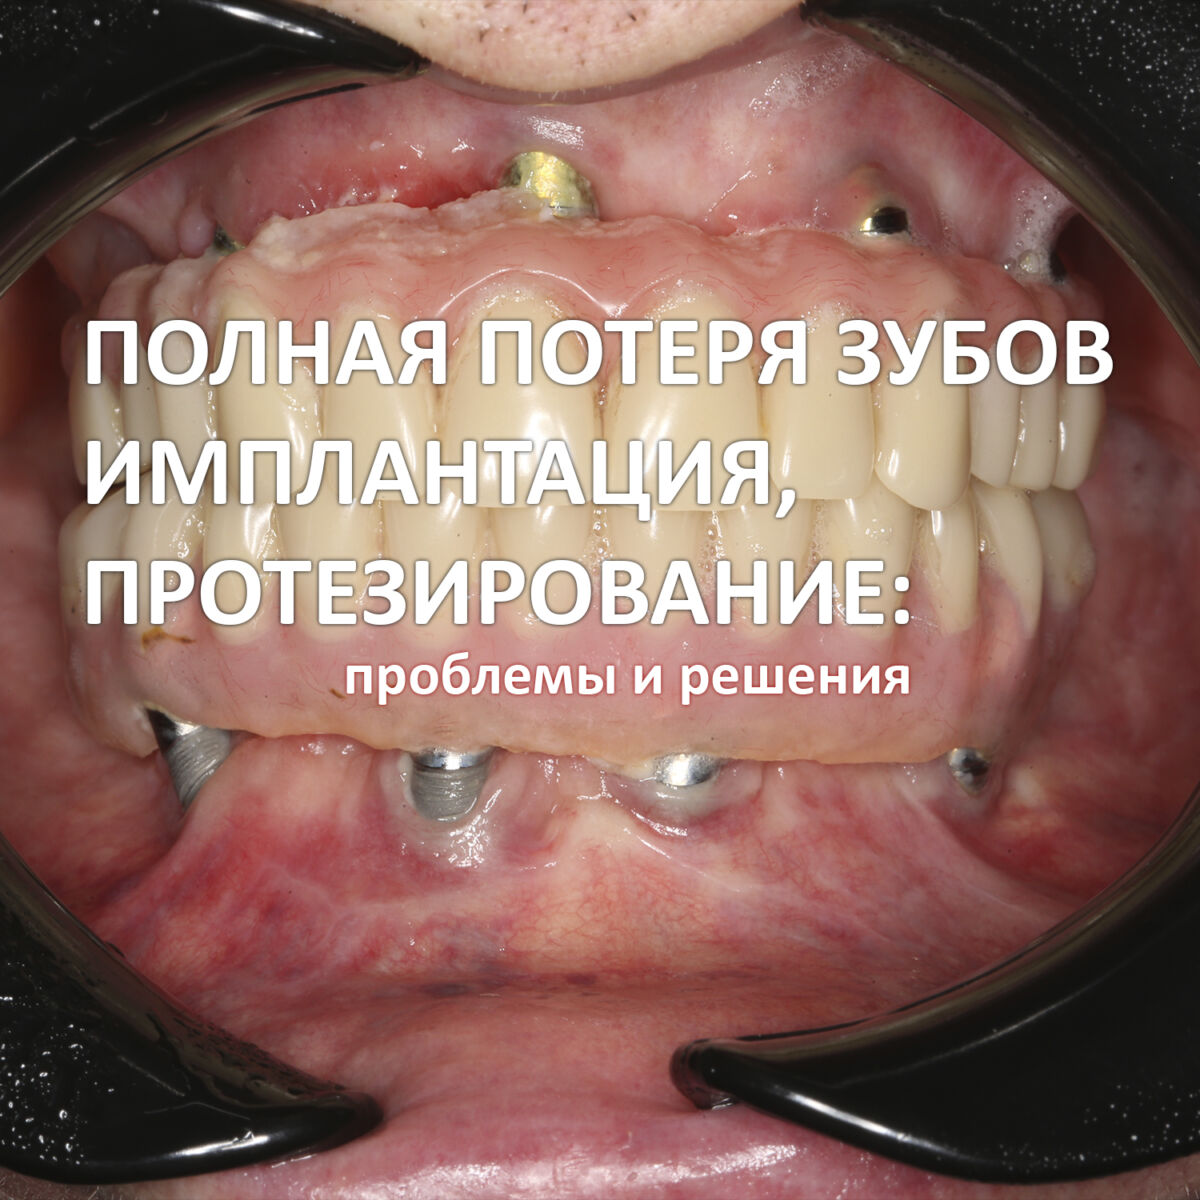 Полная потеря зубов, имплантация, протезирование: проблемы и решения.